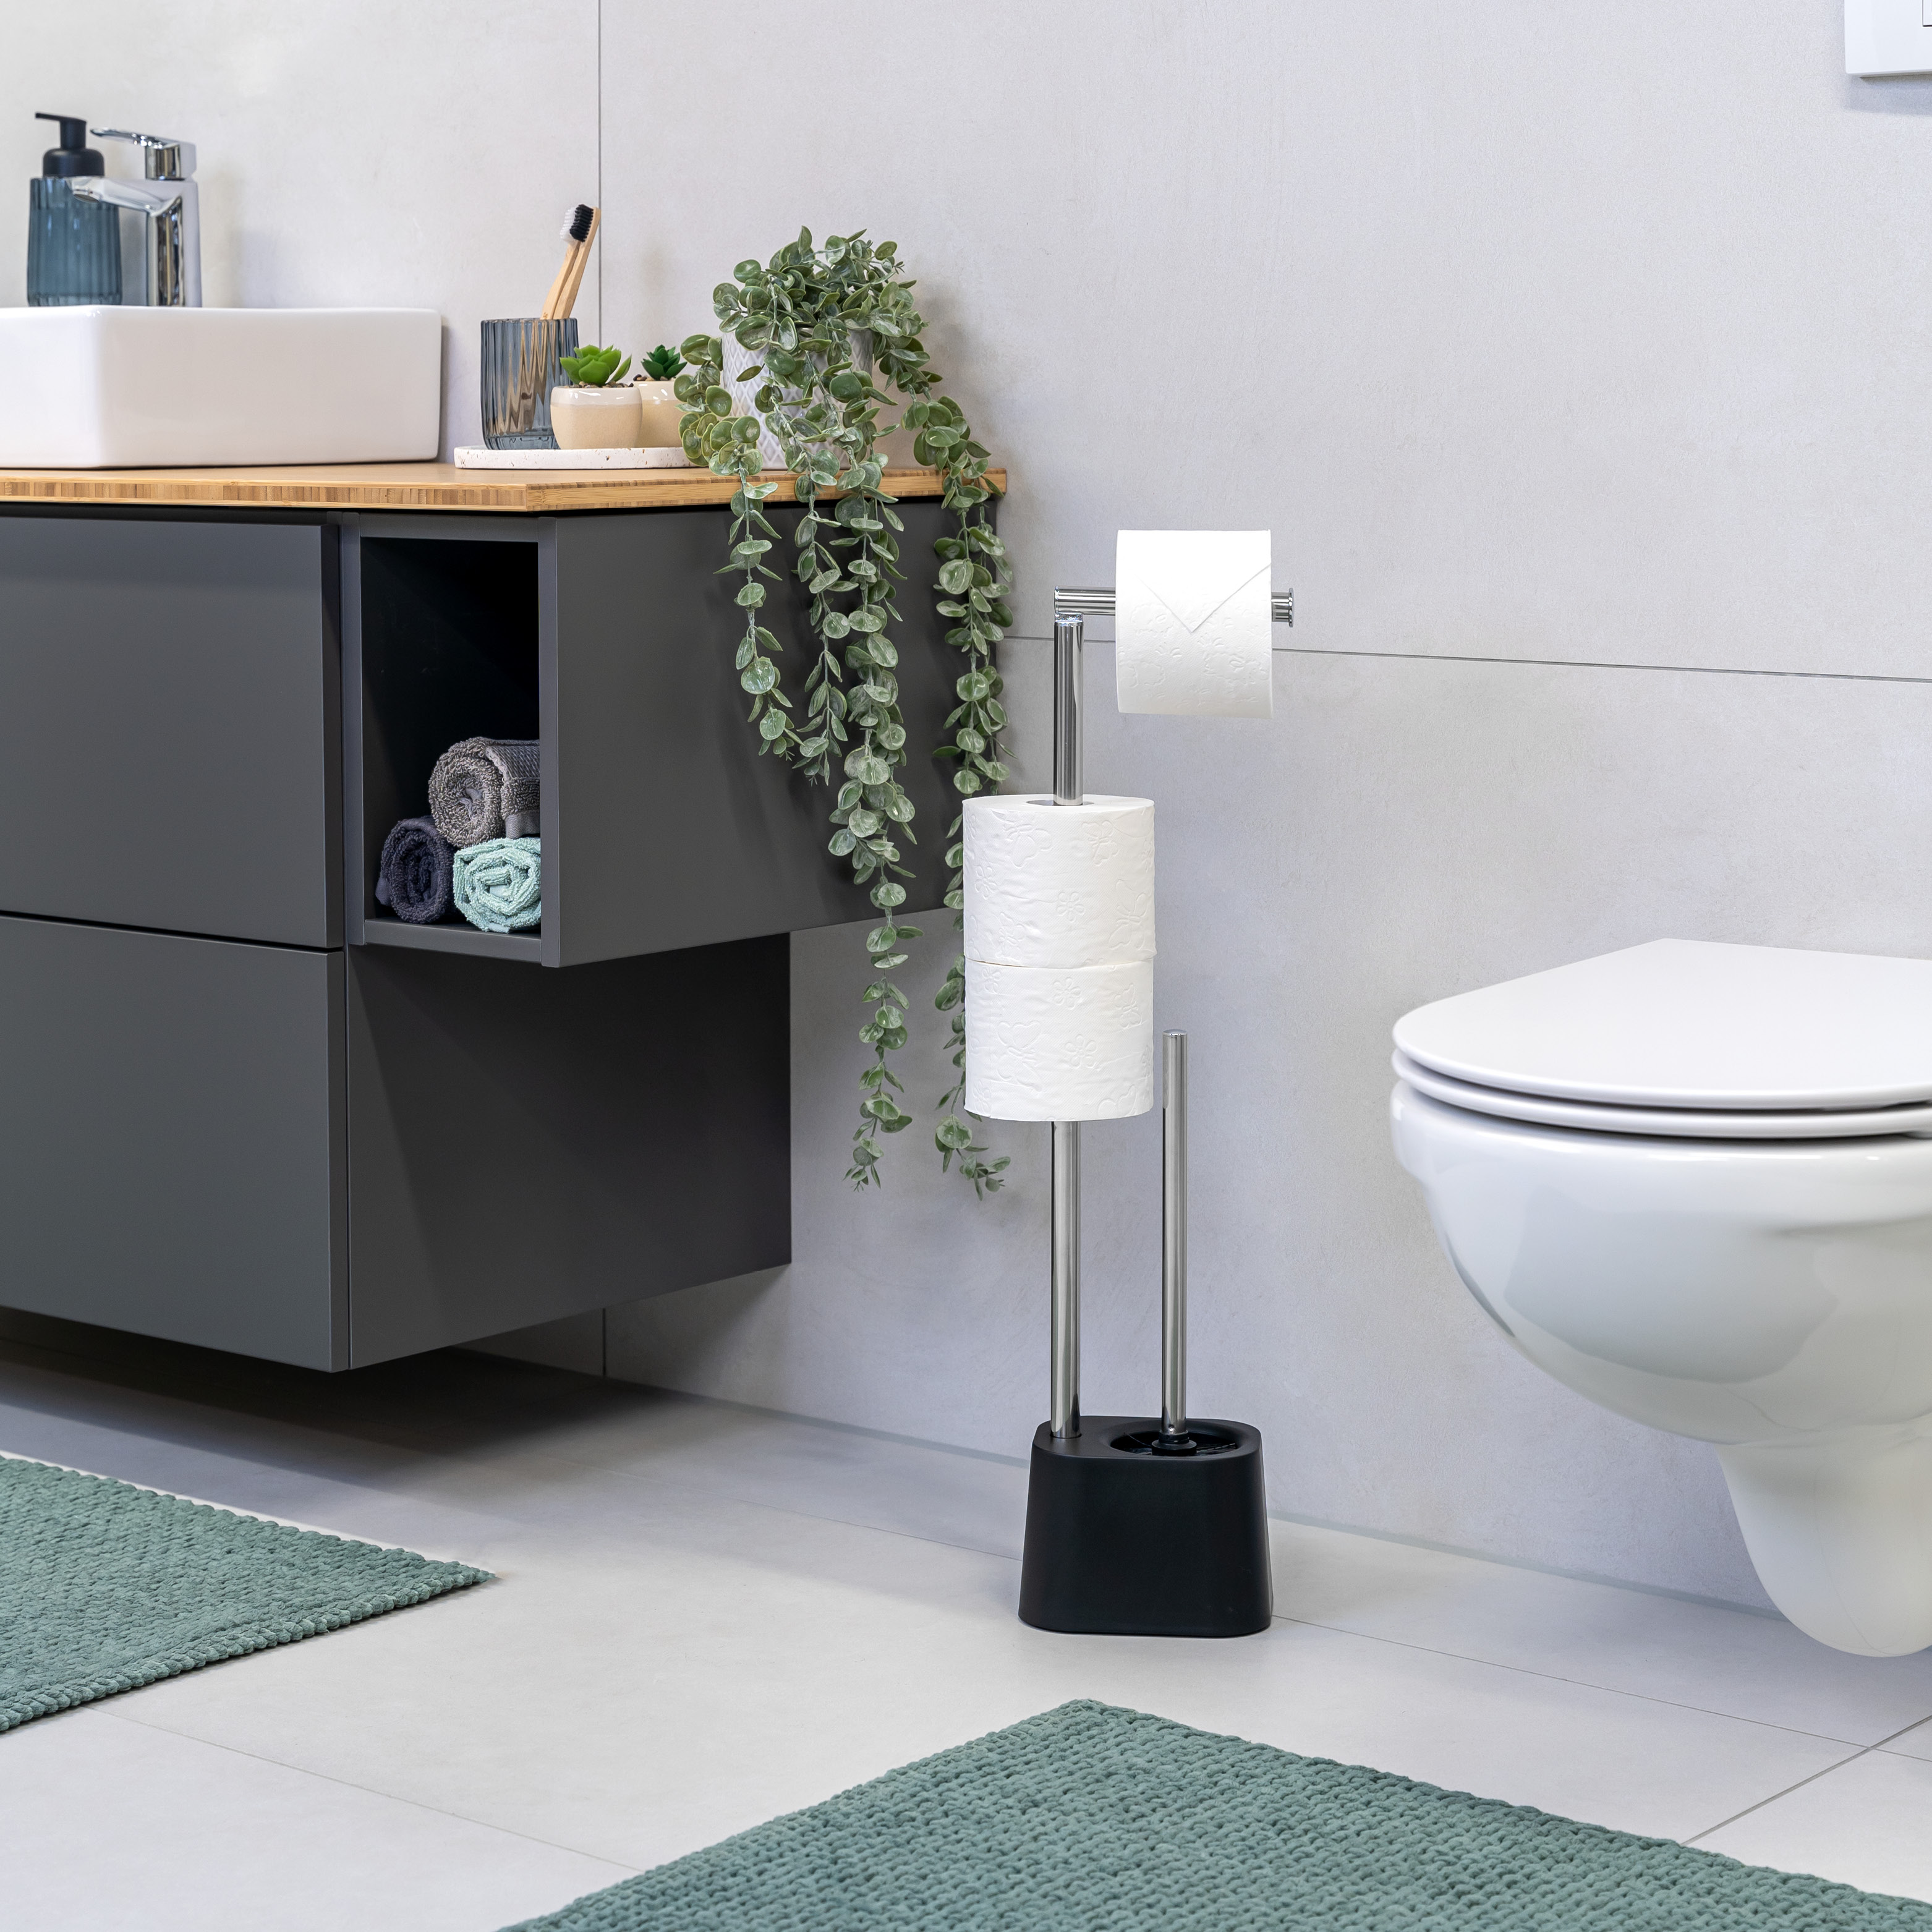 WC-Garnitur 3in1 inkl. Rollenhalter, WC-Bürste und Ersatzrollenhalter | Edelstahl rostfrei, inkl. 2 Ersatzbürstenköpfe | WC-Ständer schwarz